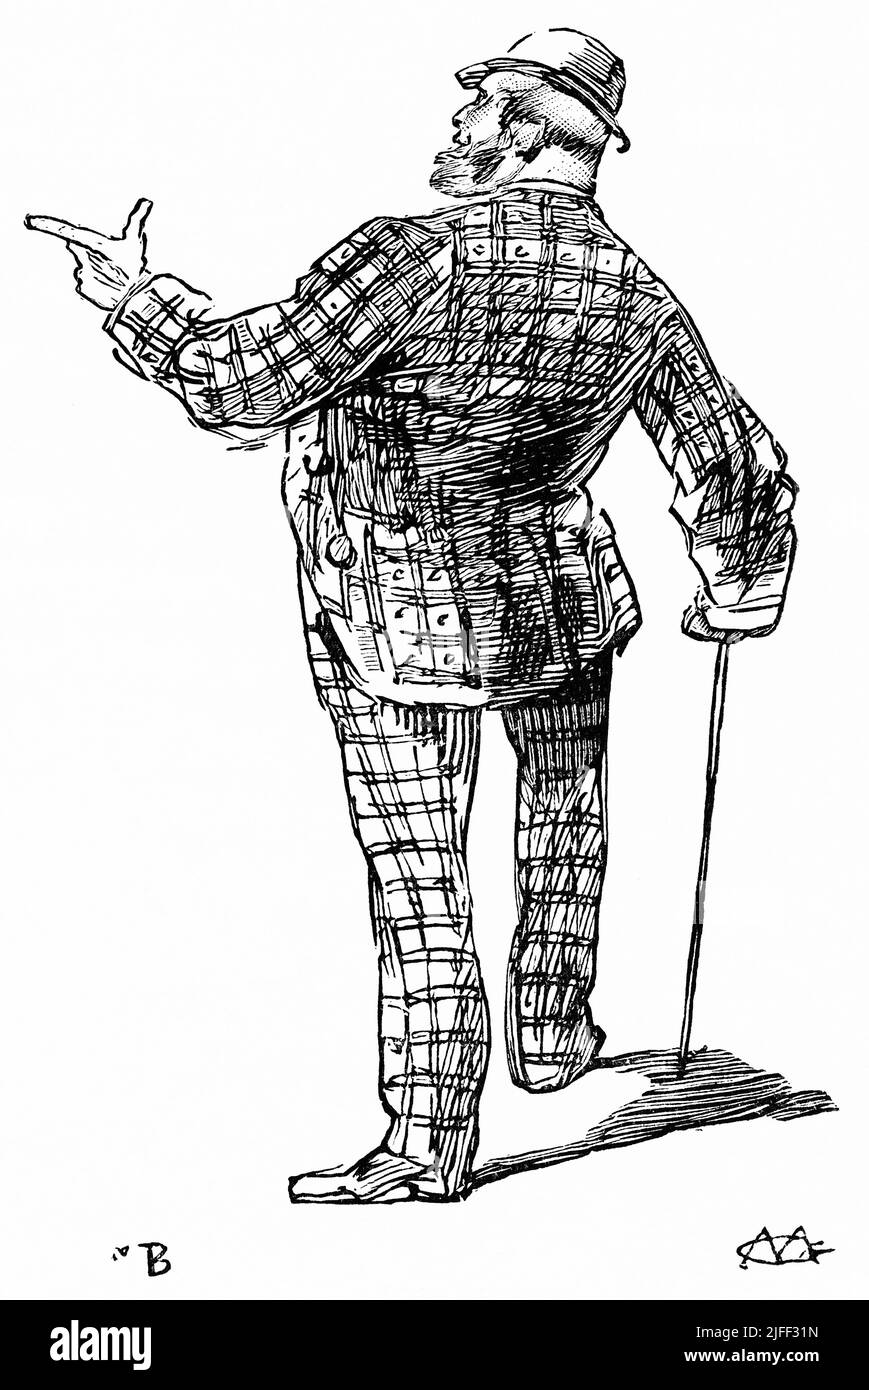 Mann, der auf Elba und St. Helens zeigt: „Die Schildkröte war ein Mitglied der britischen Gesetzgebung. „Yonder ist Elba.“ Die Schildkröte verneigte sich, und wieder stieg seine Klappe, sagte: 'Und da ist, wo er starb.', Seite 8 Illustration aus dem Buch, 'vom Pharao bis Fellah' von C.F. Moberly Bell mit Illustrationen von Georges Montbard, gestochen von Charles Barbant, Wells Gardner, Darton & Co., London, 1888 Stockfoto